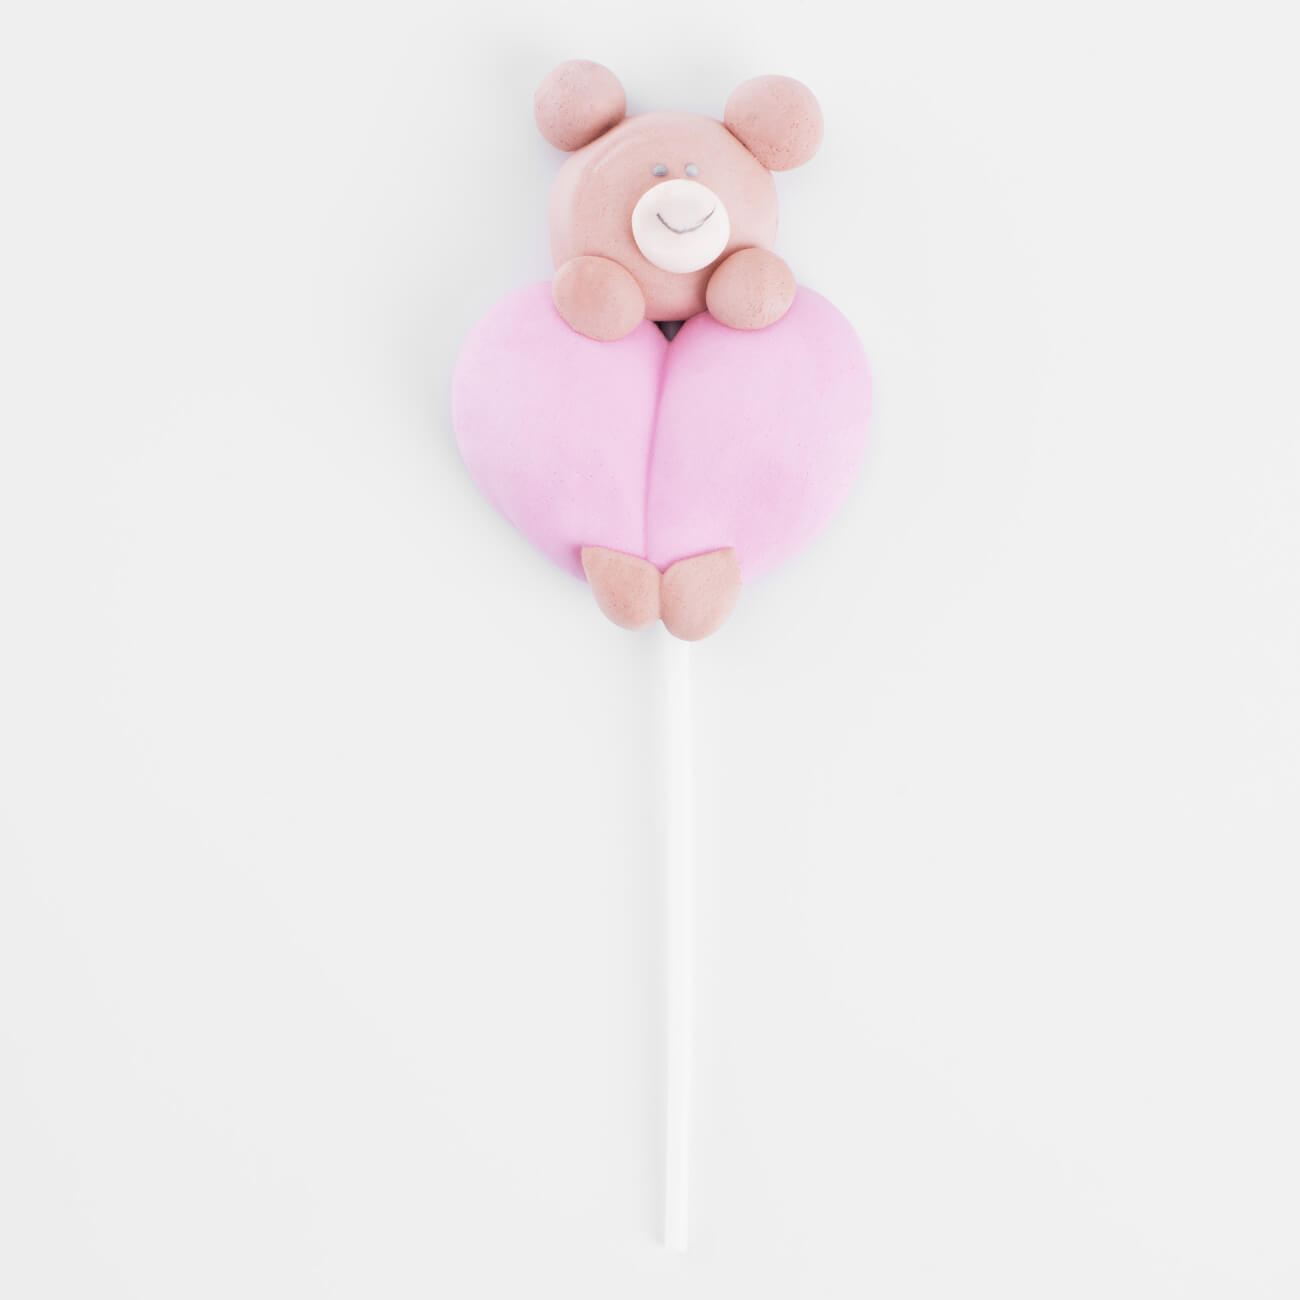 Маршмеллоу, 17 гр, на палочке, коричнево-розовое, Ваниль, Мишка с сердцем, Sweet life каталка на палочке